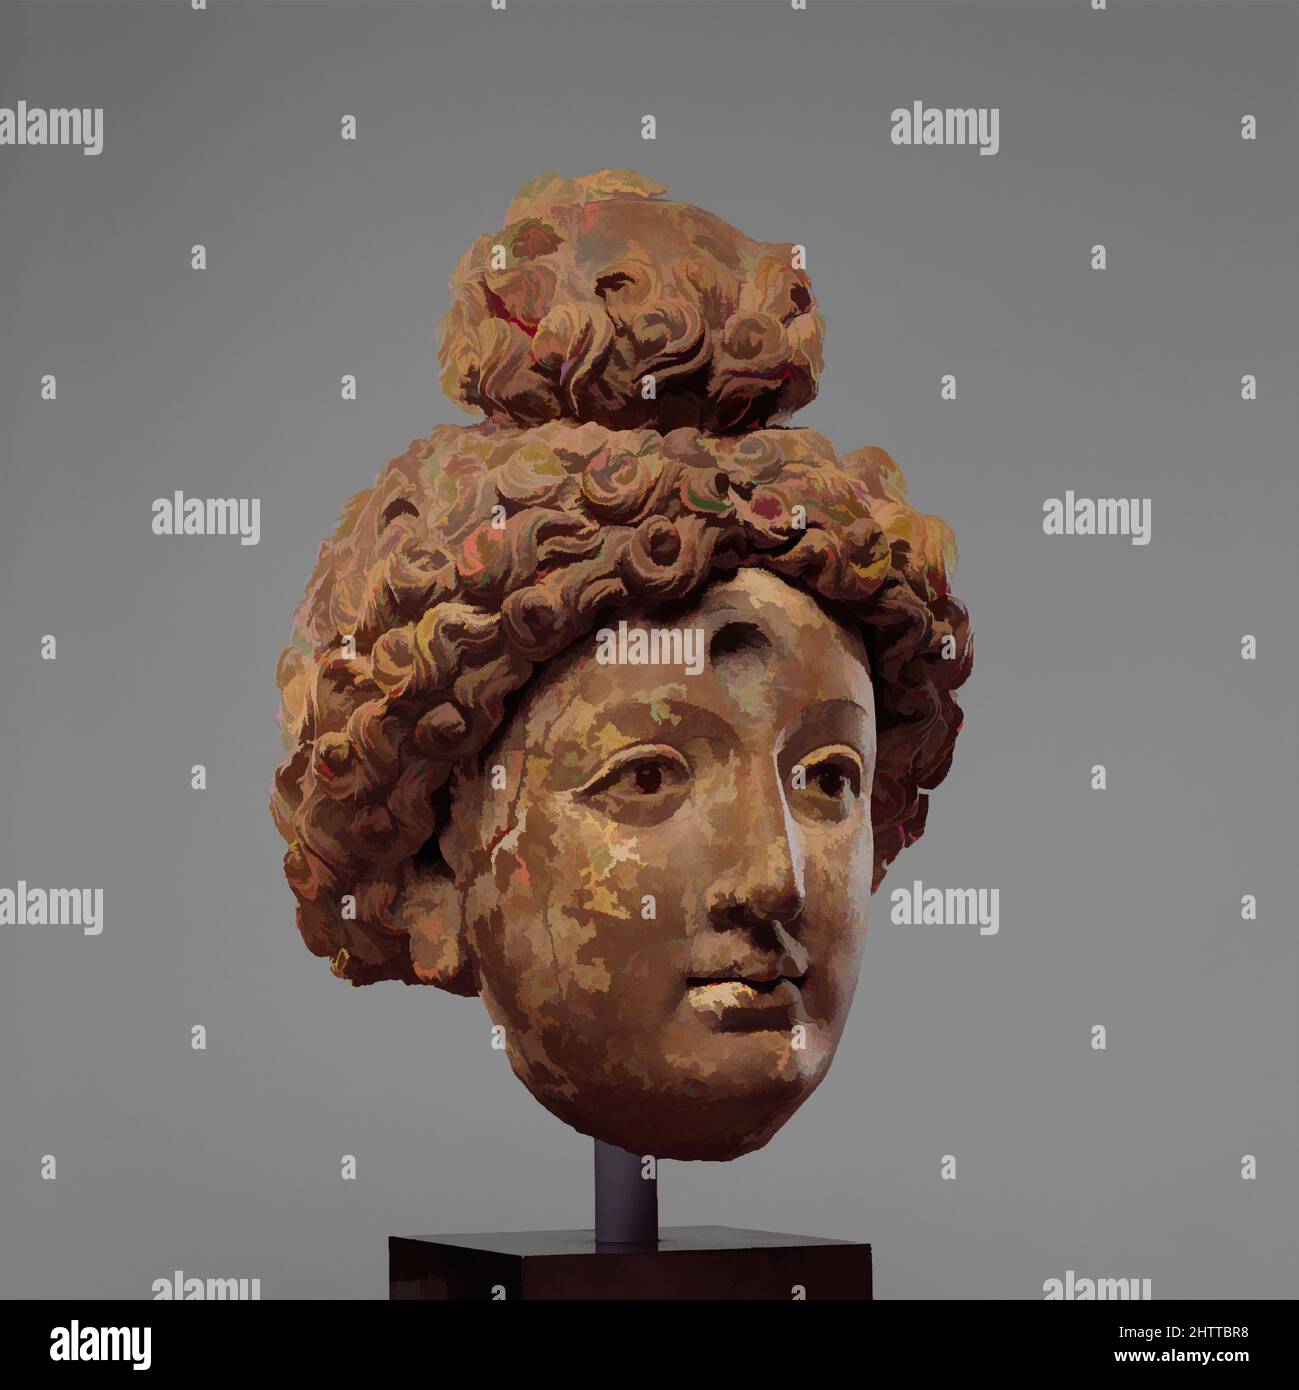 Arte ispirata dalla testa di un Buddha o Bodhisattva, 5th–6th secolo, Afghanistan (probabilmente Hadda), Clay con gli occhi di granato inset, H. 12 1/4 pollici. (31,1 cm); W. 8 7/8" (22,5 cm); D. 7 1/4" (18,4 cm), scultura, questa testa dà un senso della raffinatezza della scultura afghana. Strati di argilla, opere classiche modernizzate da Artotop con un tuffo di modernità. Forme, colore e valore, impatto visivo accattivante sulle emozioni artistiche attraverso la libertà delle opere d'arte in modo contemporaneo. Un messaggio senza tempo che persegue una nuova direzione selvaggiamente creativa. Artisti che si rivolgono al supporto digitale e creano l'NFT Artotop Foto Stock